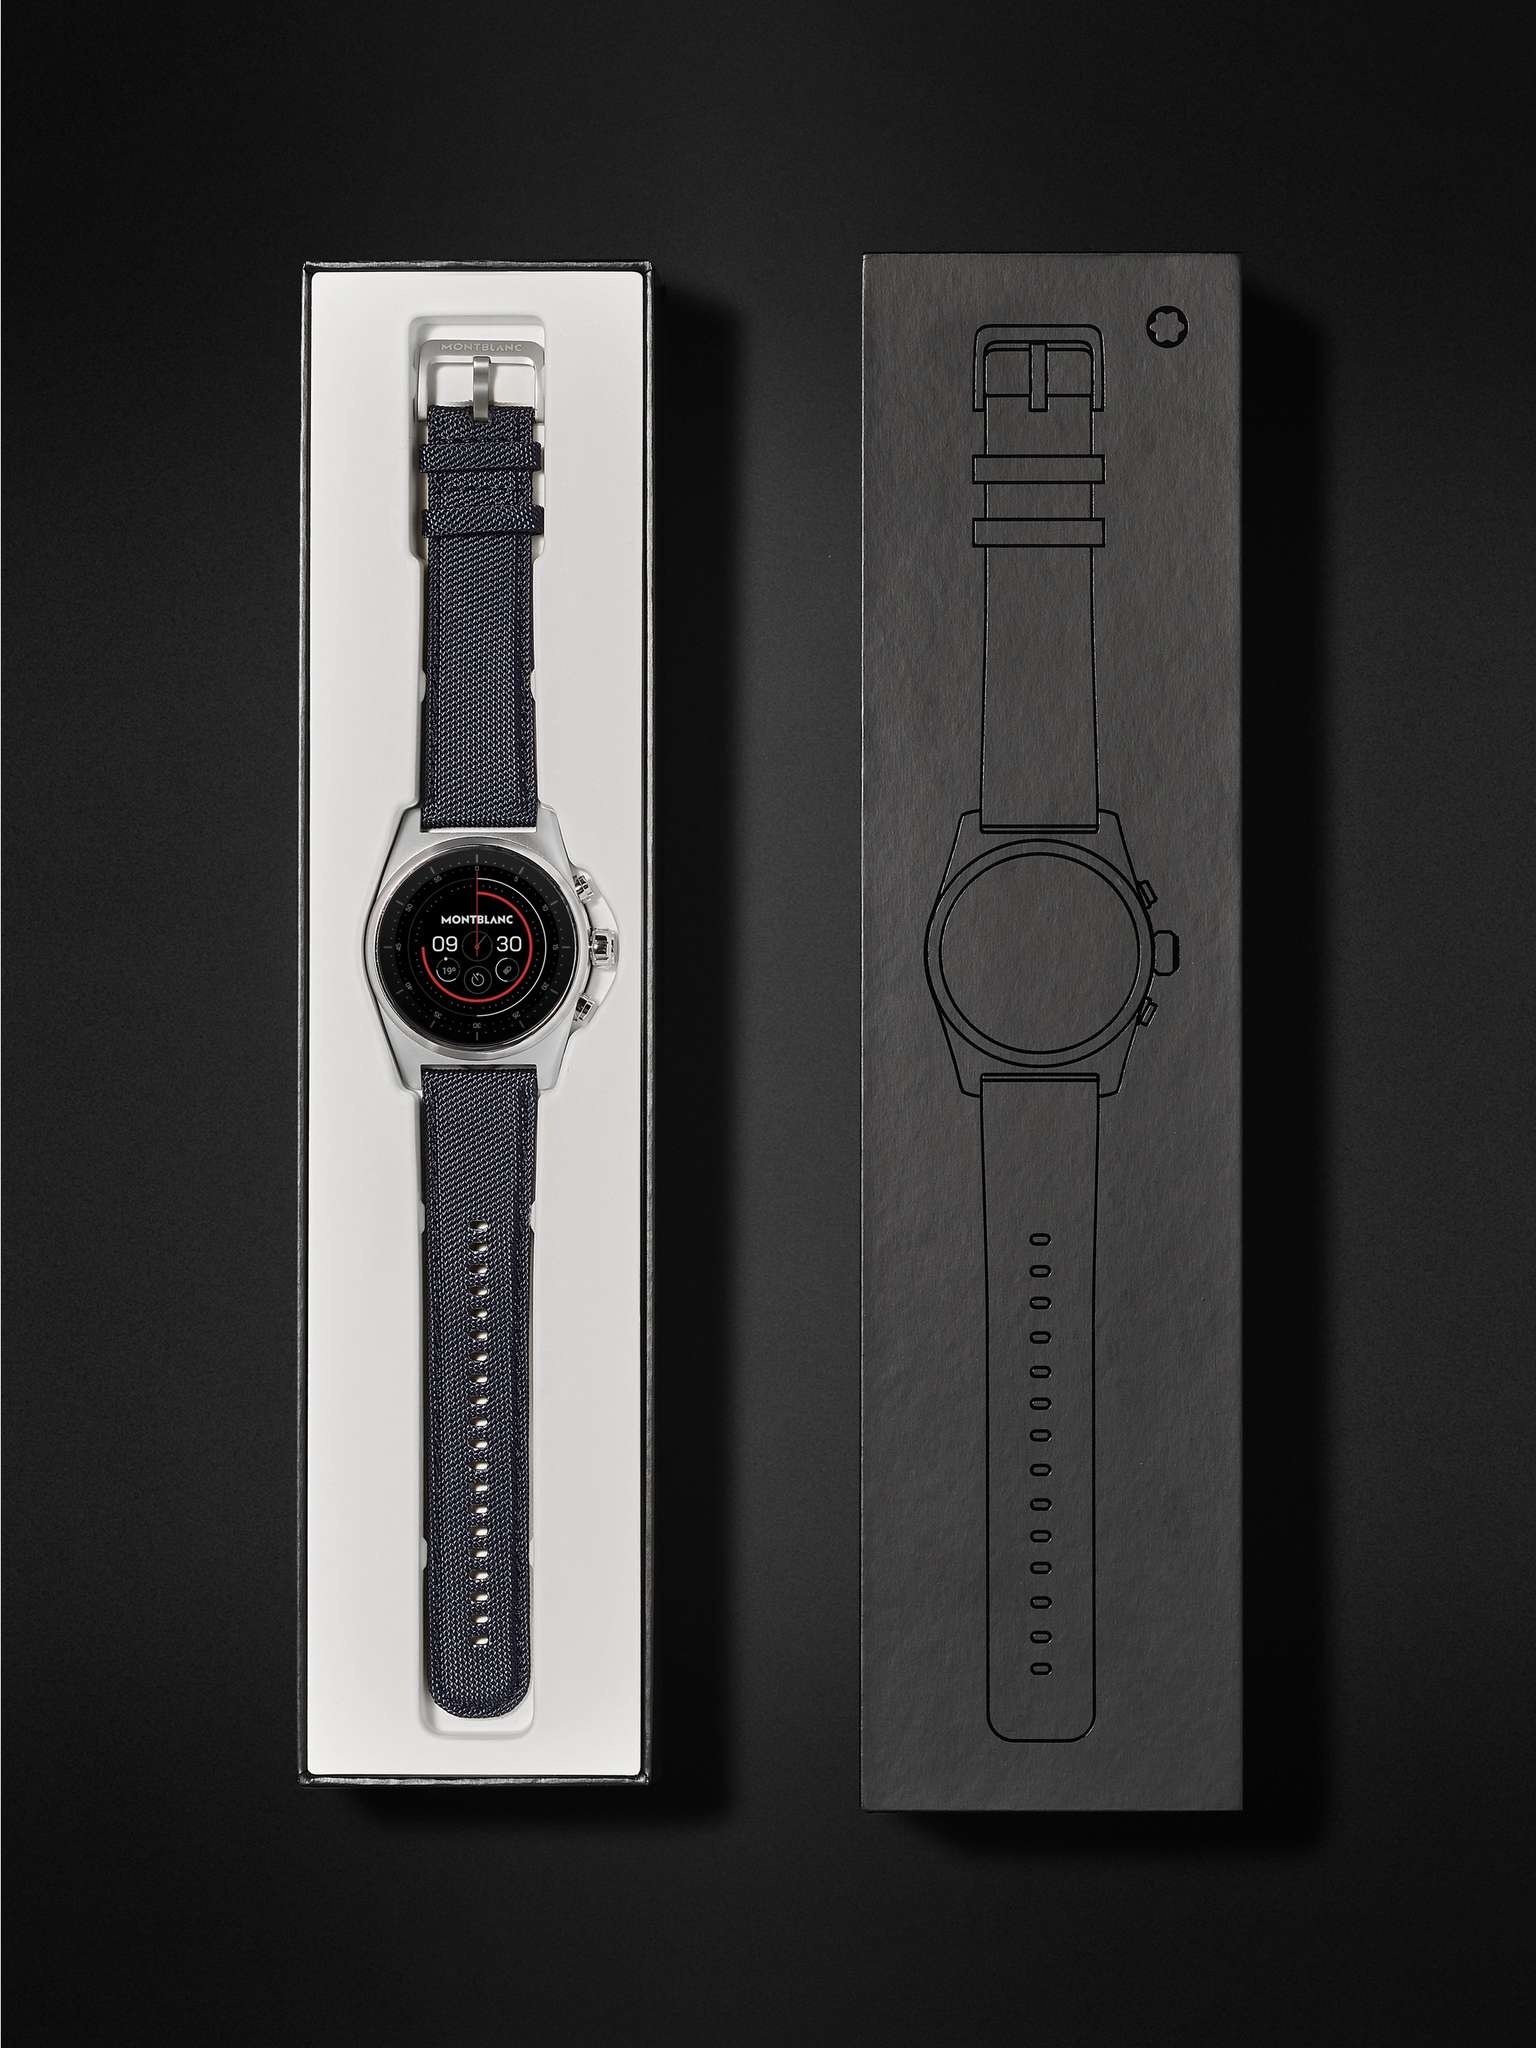 Summit Lite 43mm Aluminium and Nylon Smart Watch, Ref. No. 128411 - 7